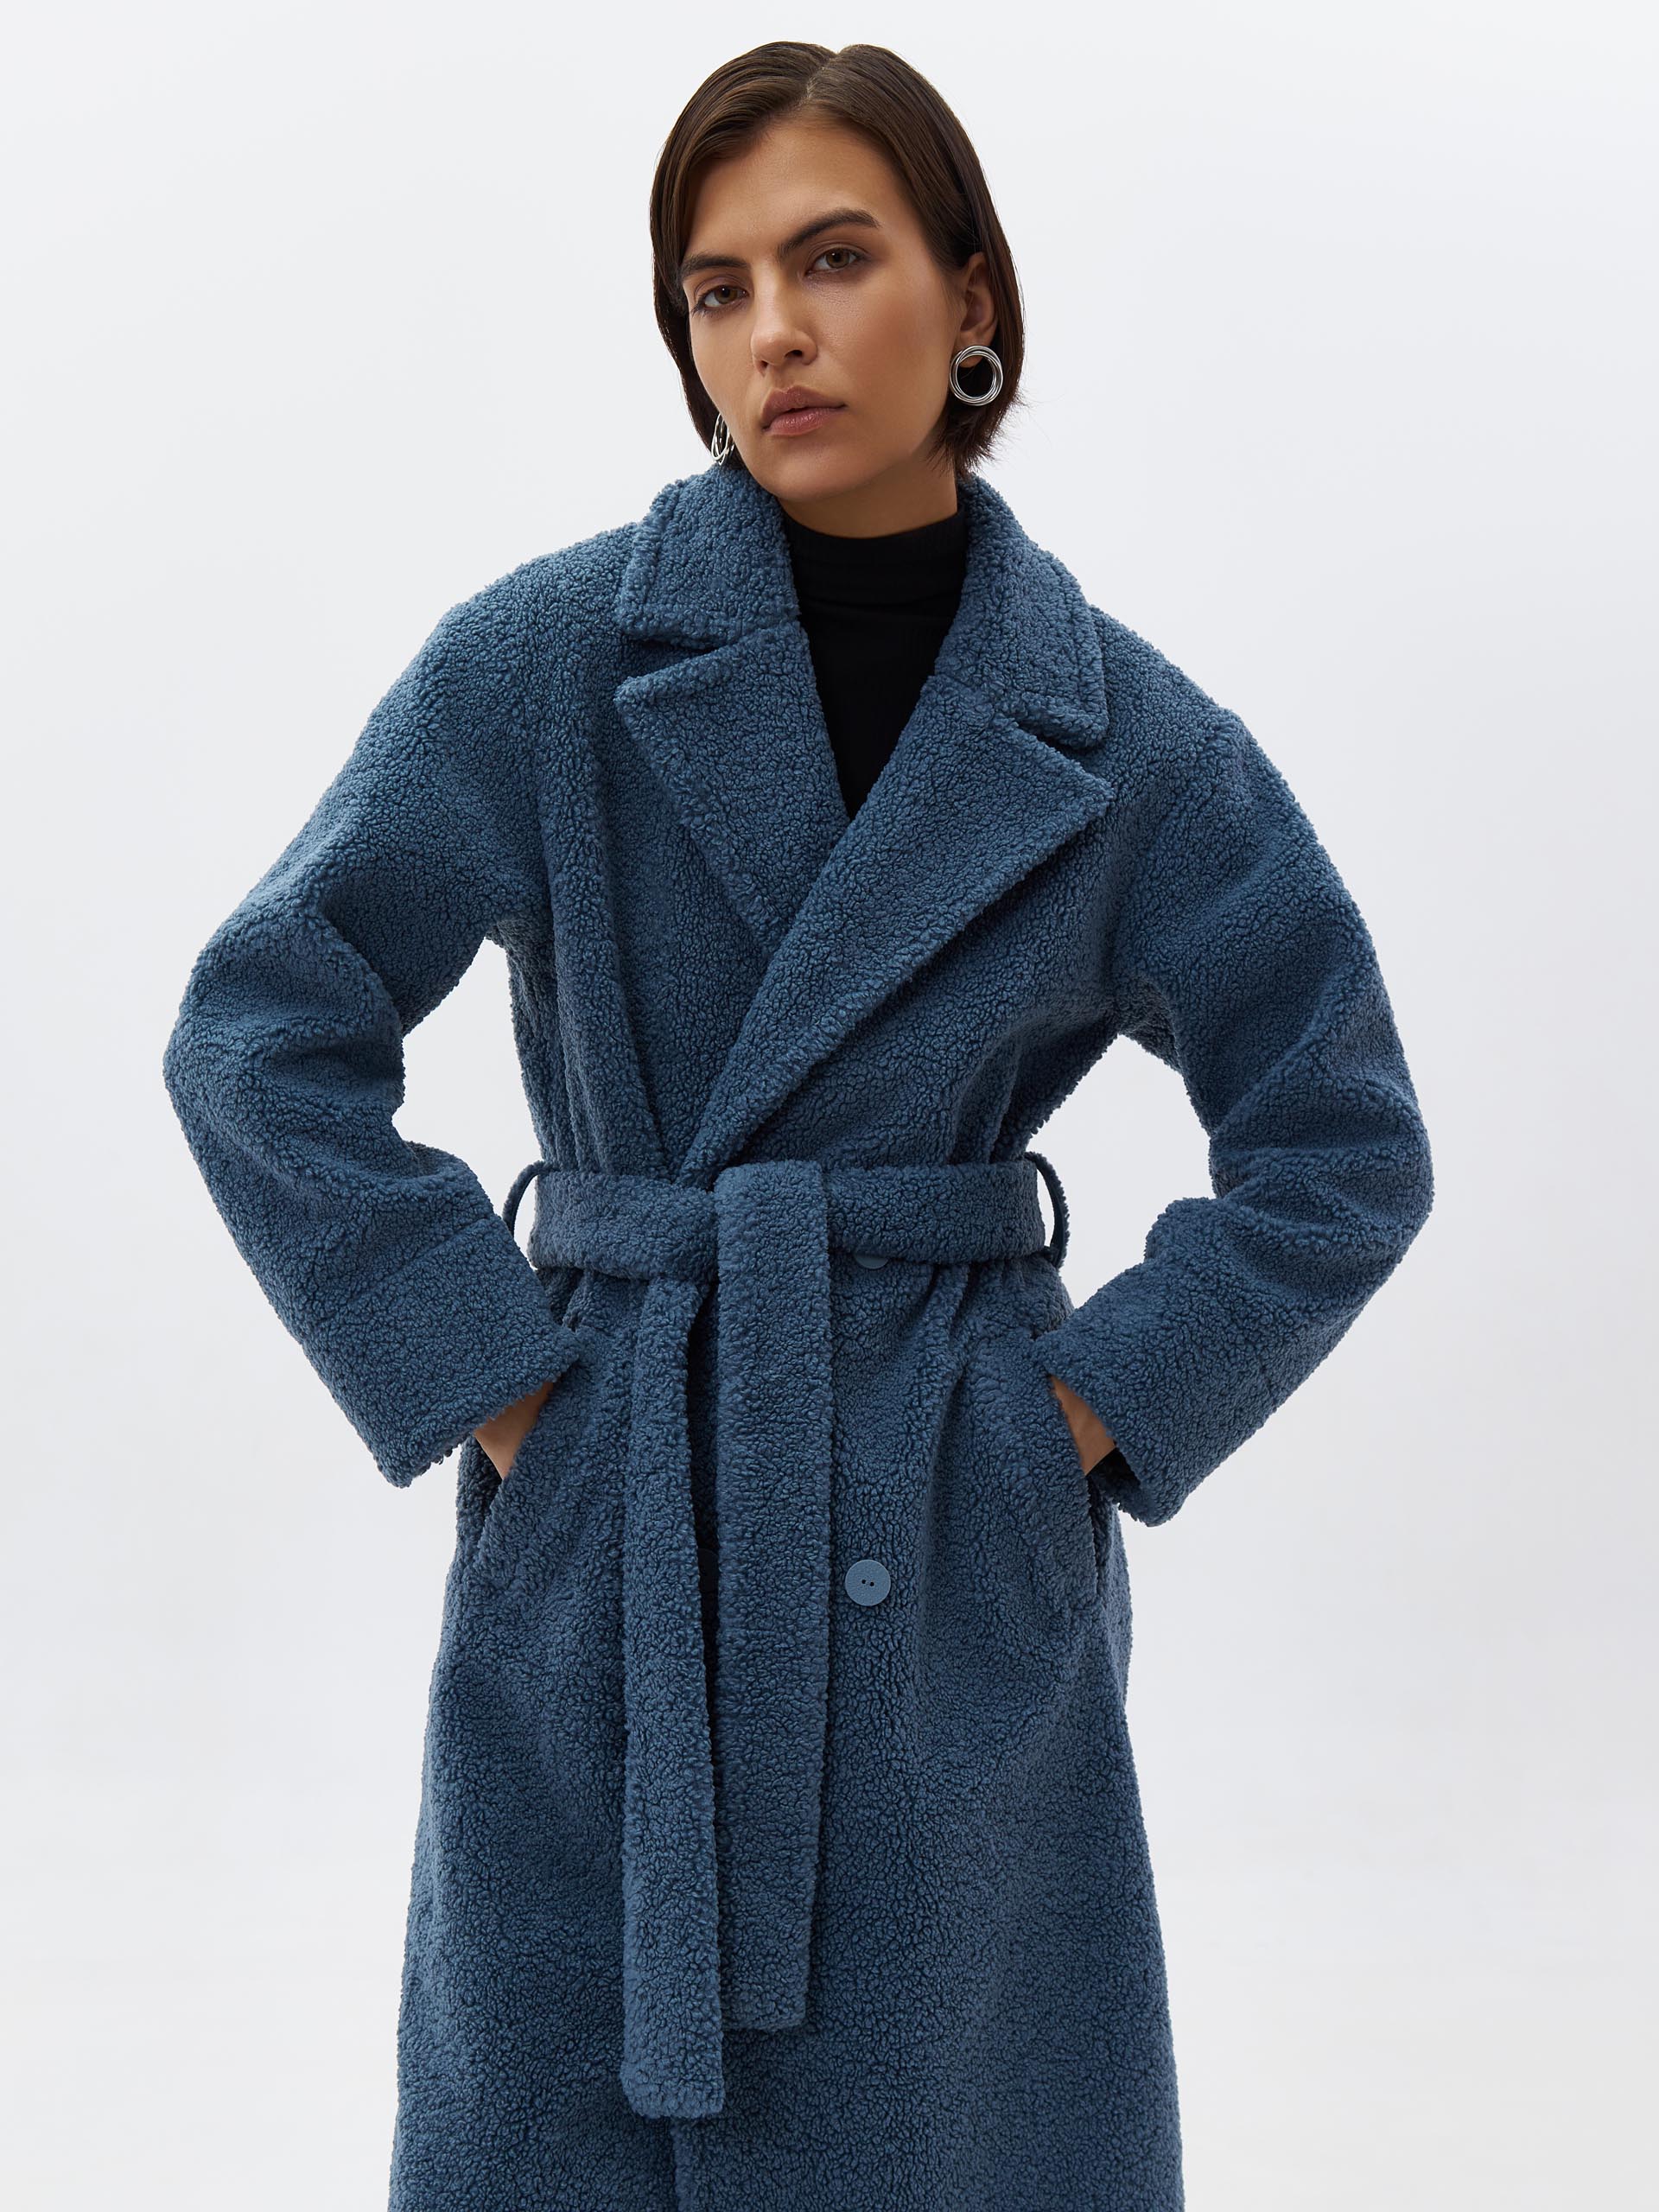 Удлиненное двубортное пальто из экомеха. Изображение 1